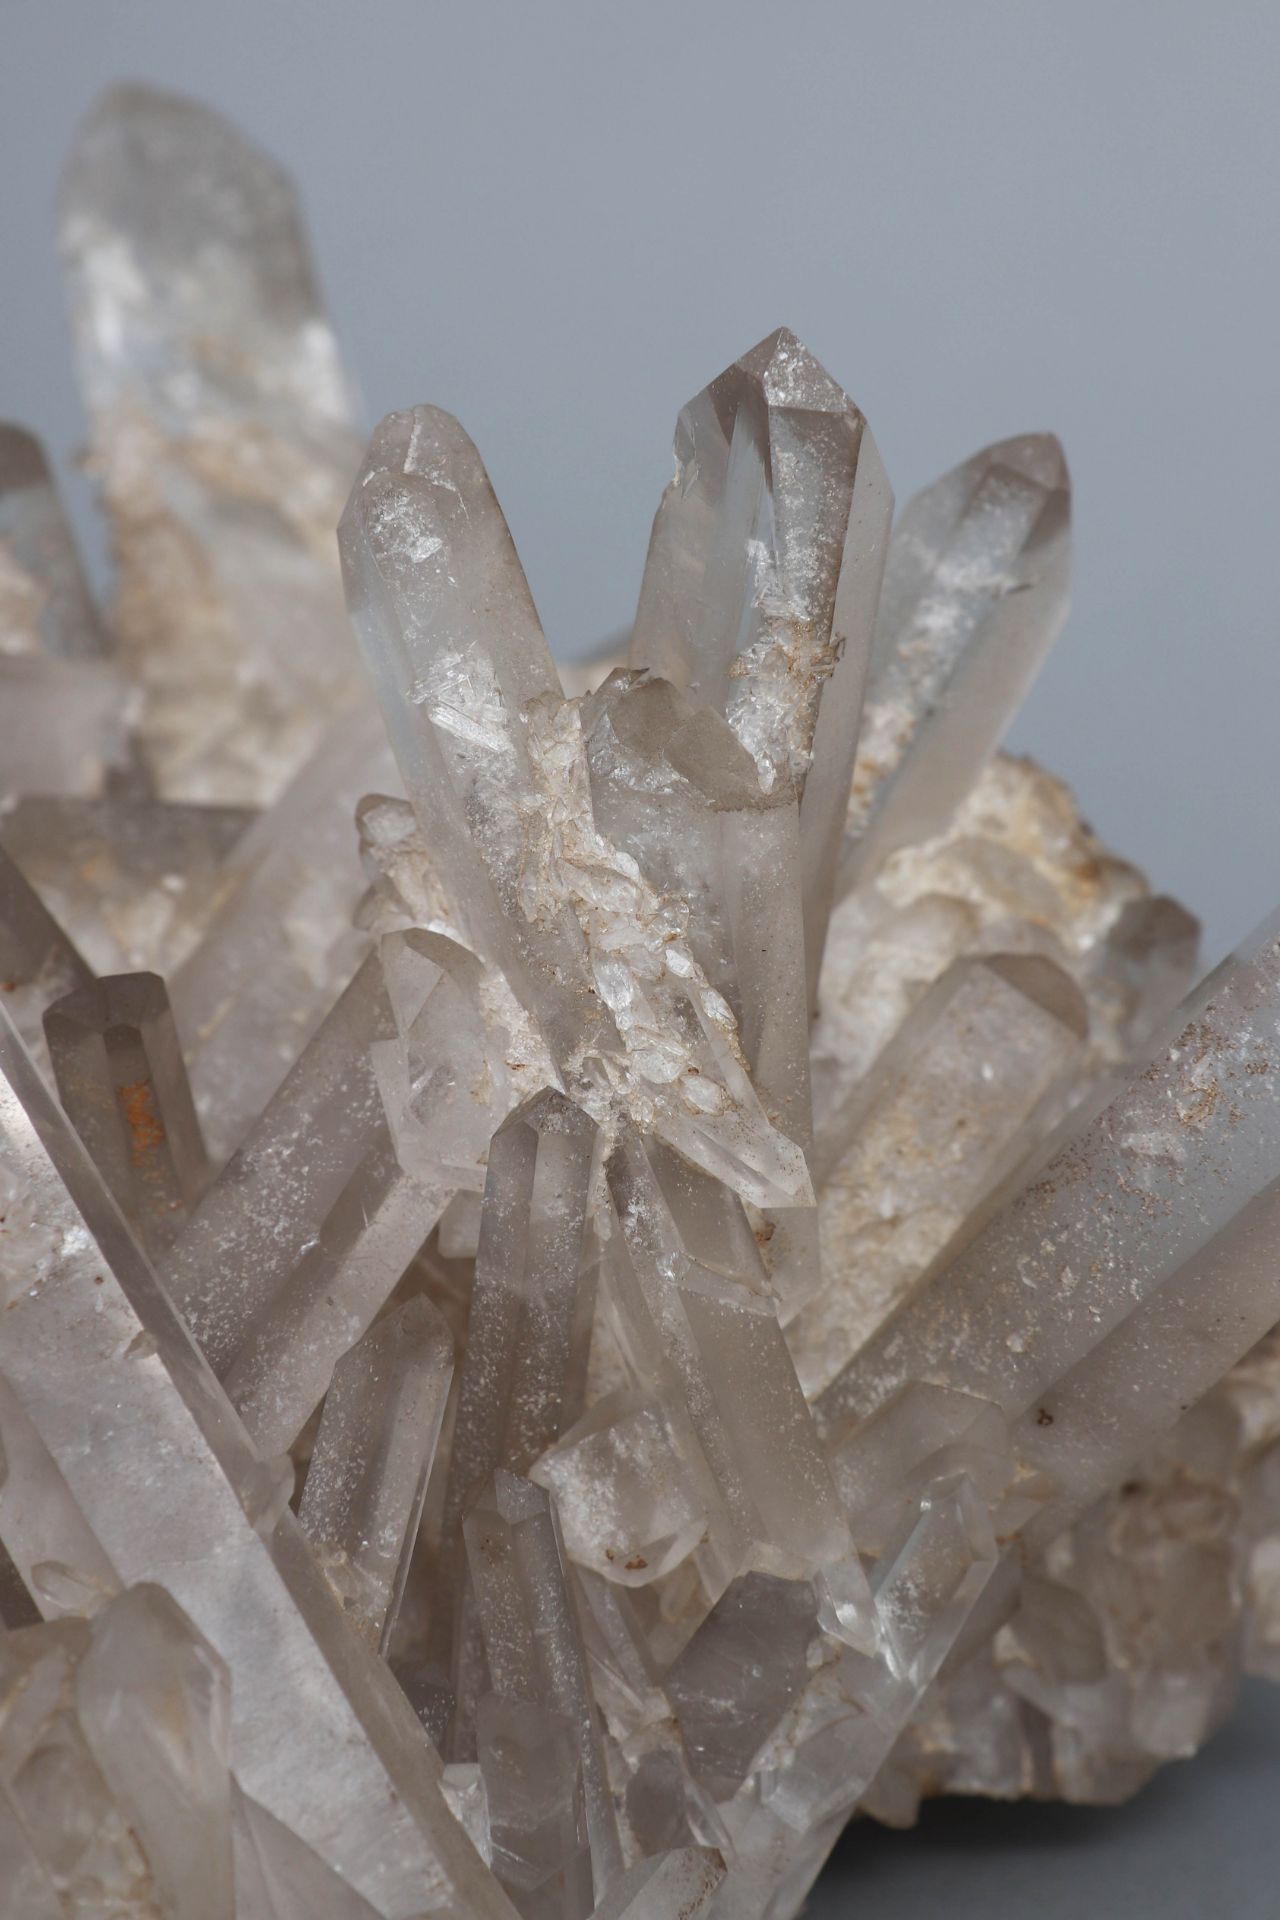 Bergkristall Druse - Image 3 of 3